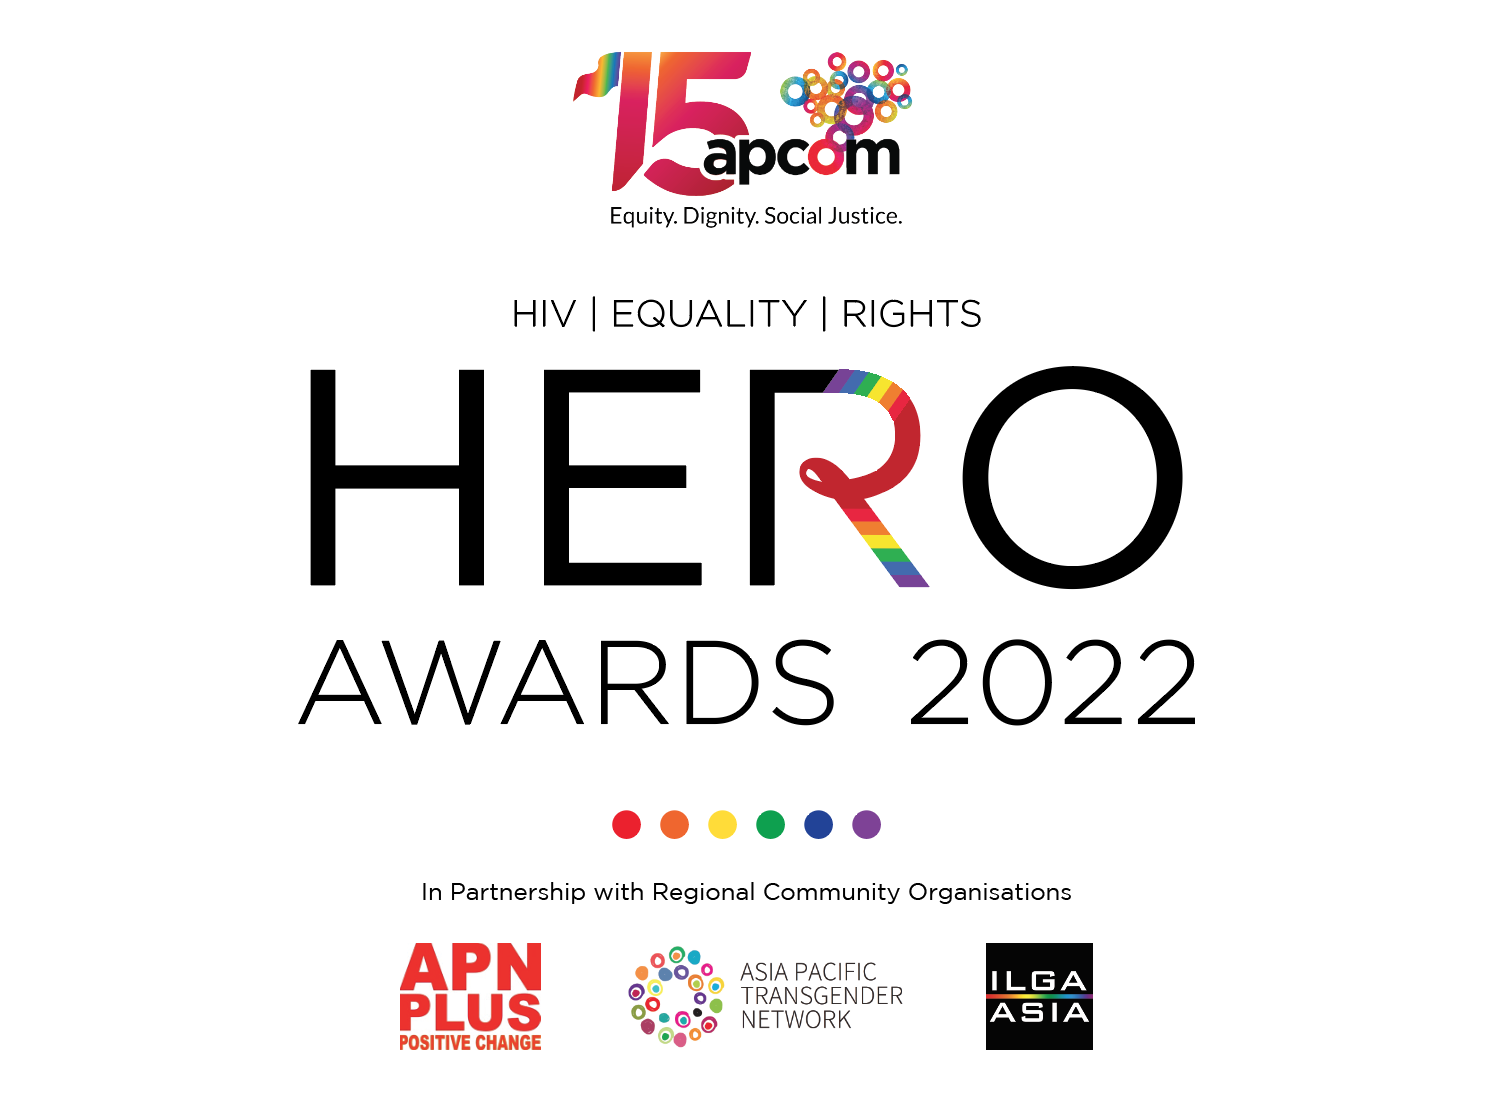 ‘APCOM Community Ally Hero Award 2022′ goes to FPAN’s Sitaula